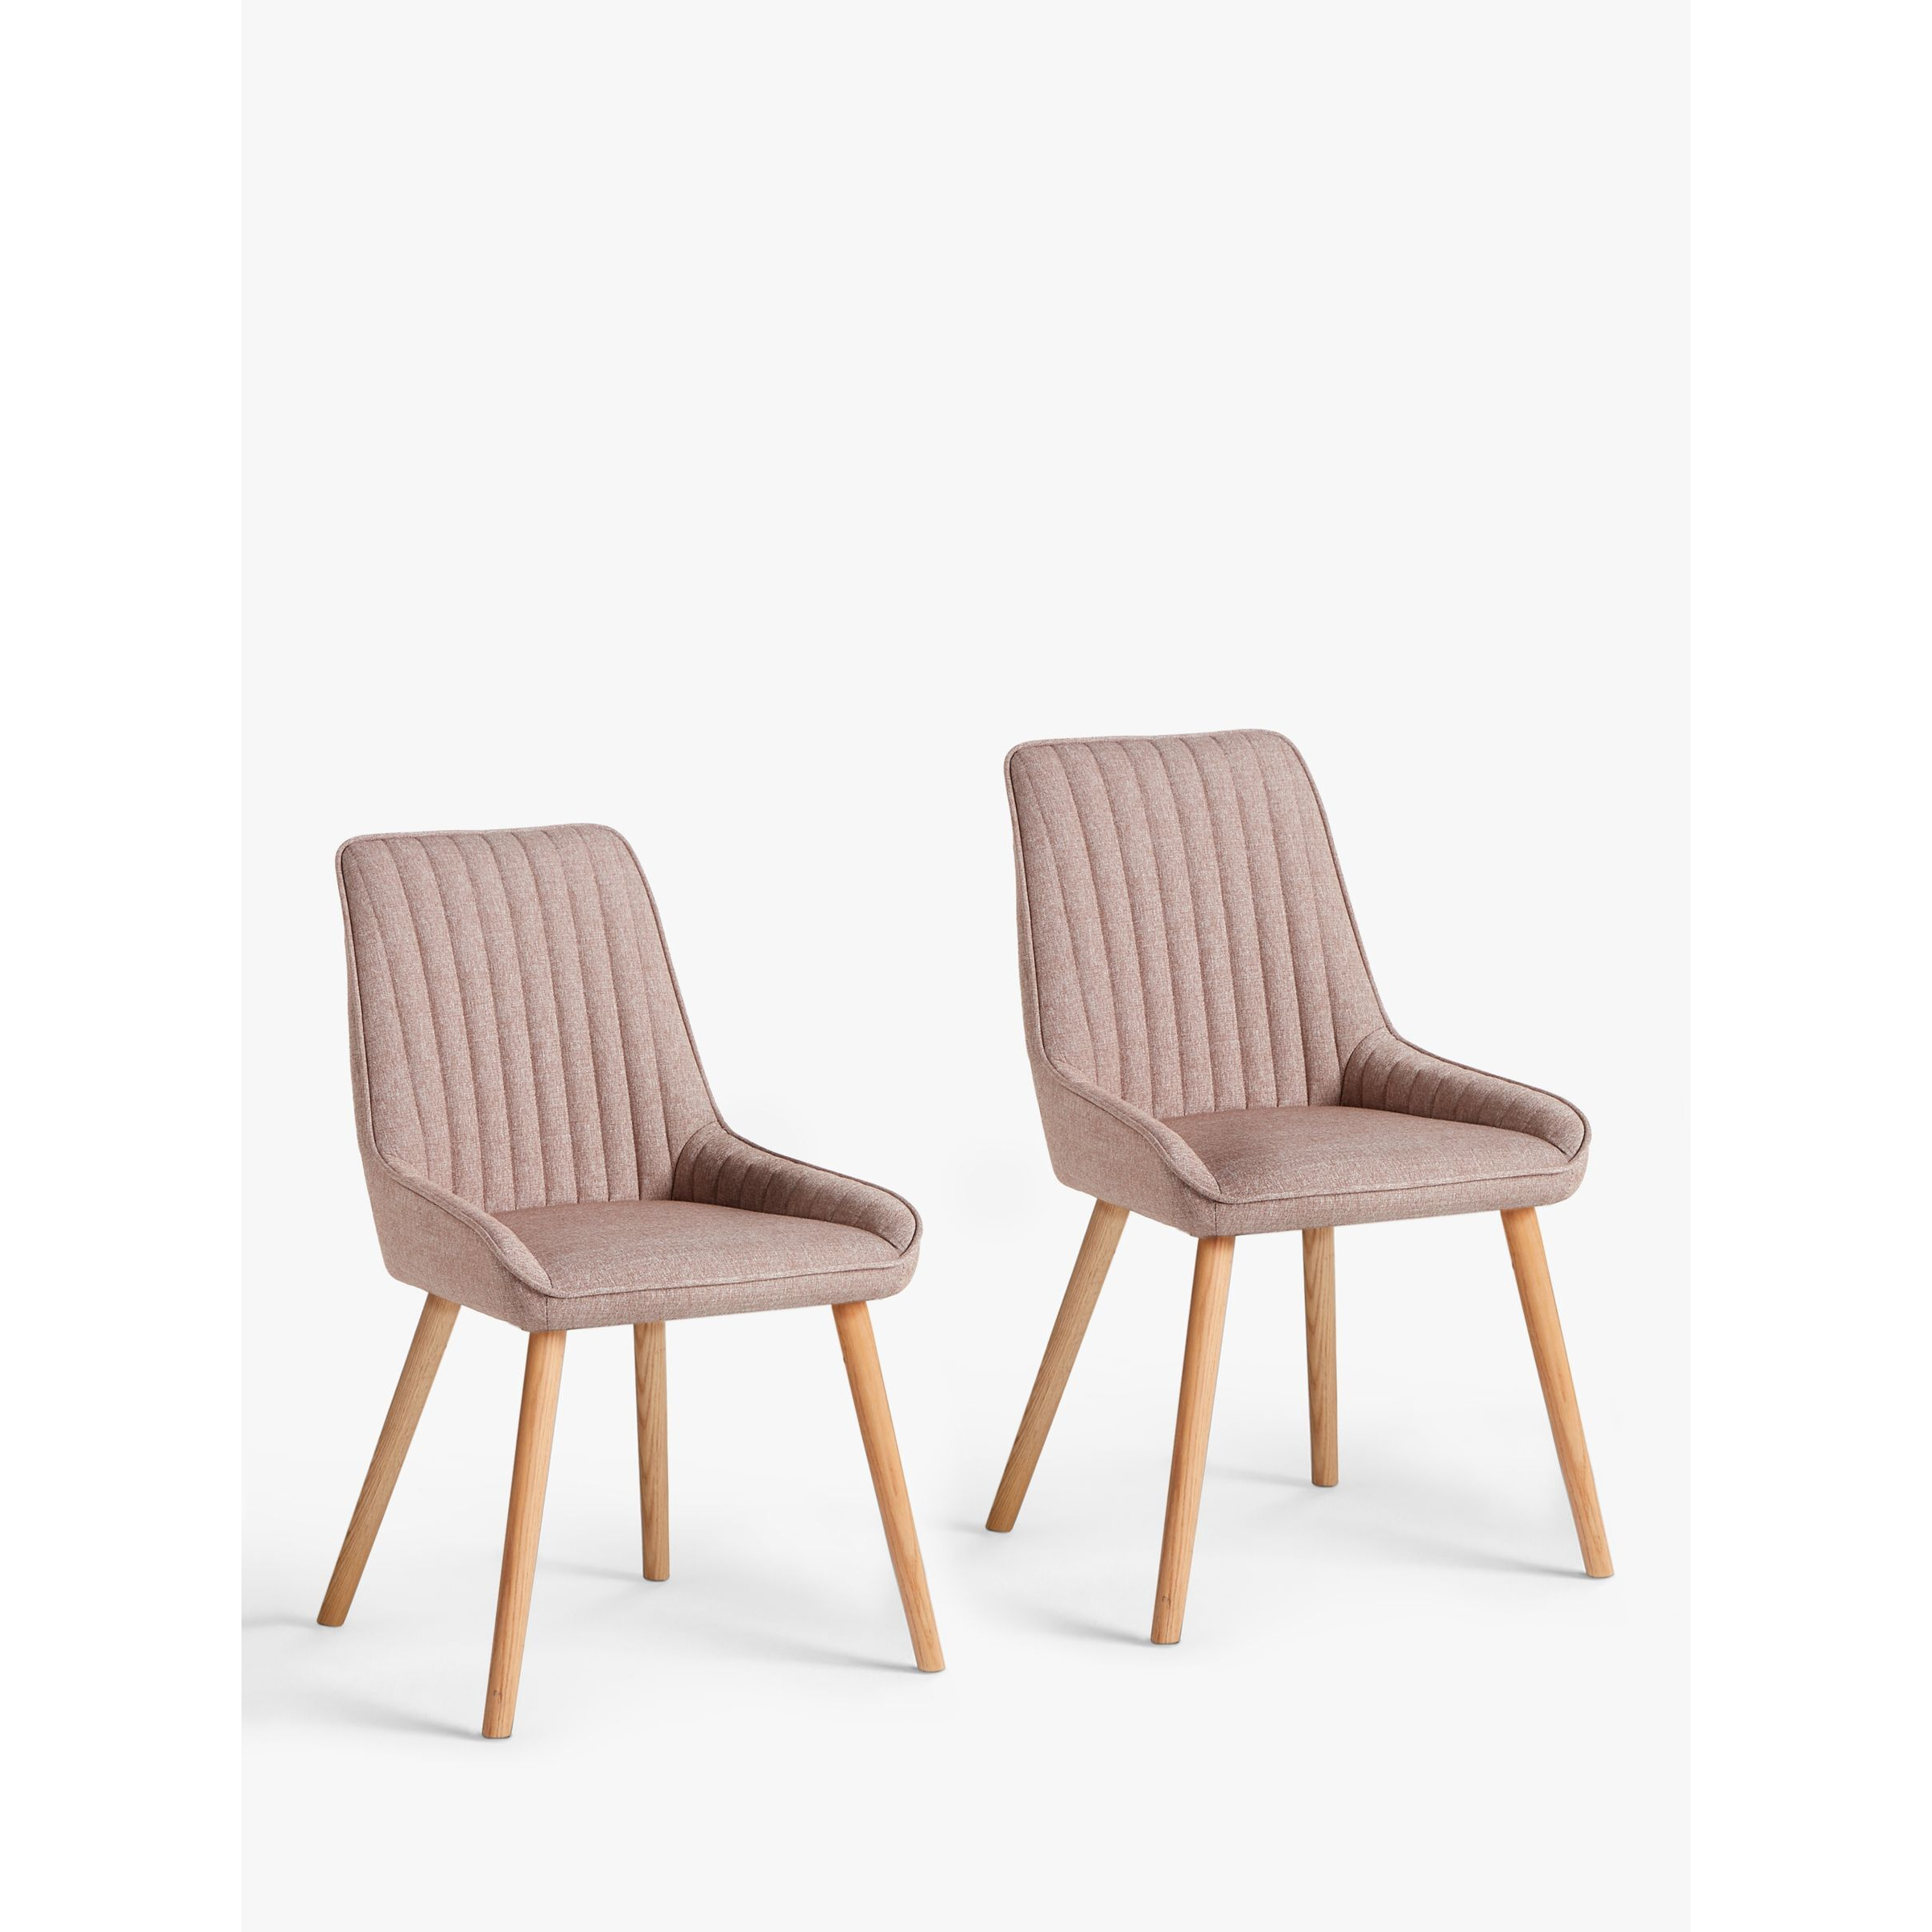 John Lewis Toronto Side Dining Chairs, Set of 2 - image 1